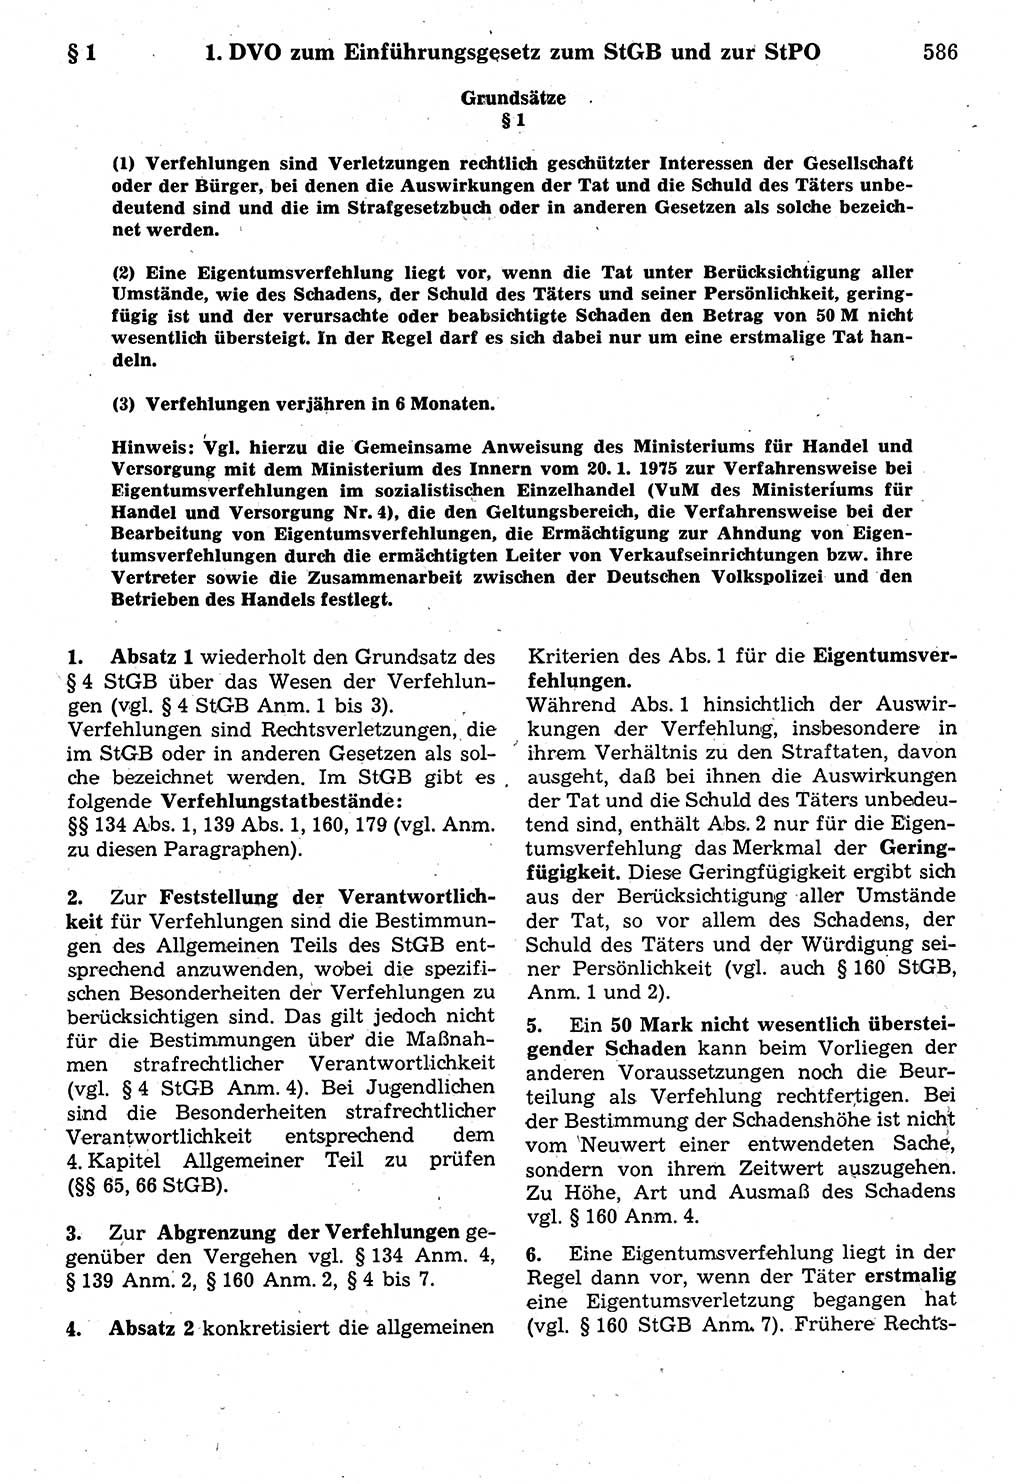 Strafrecht der Deutschen Demokratischen Republik (DDR), Kommentar zum Strafgesetzbuch (StGB) 1987, Seite 586 (Strafr. DDR Komm. StGB 1987, S. 586)